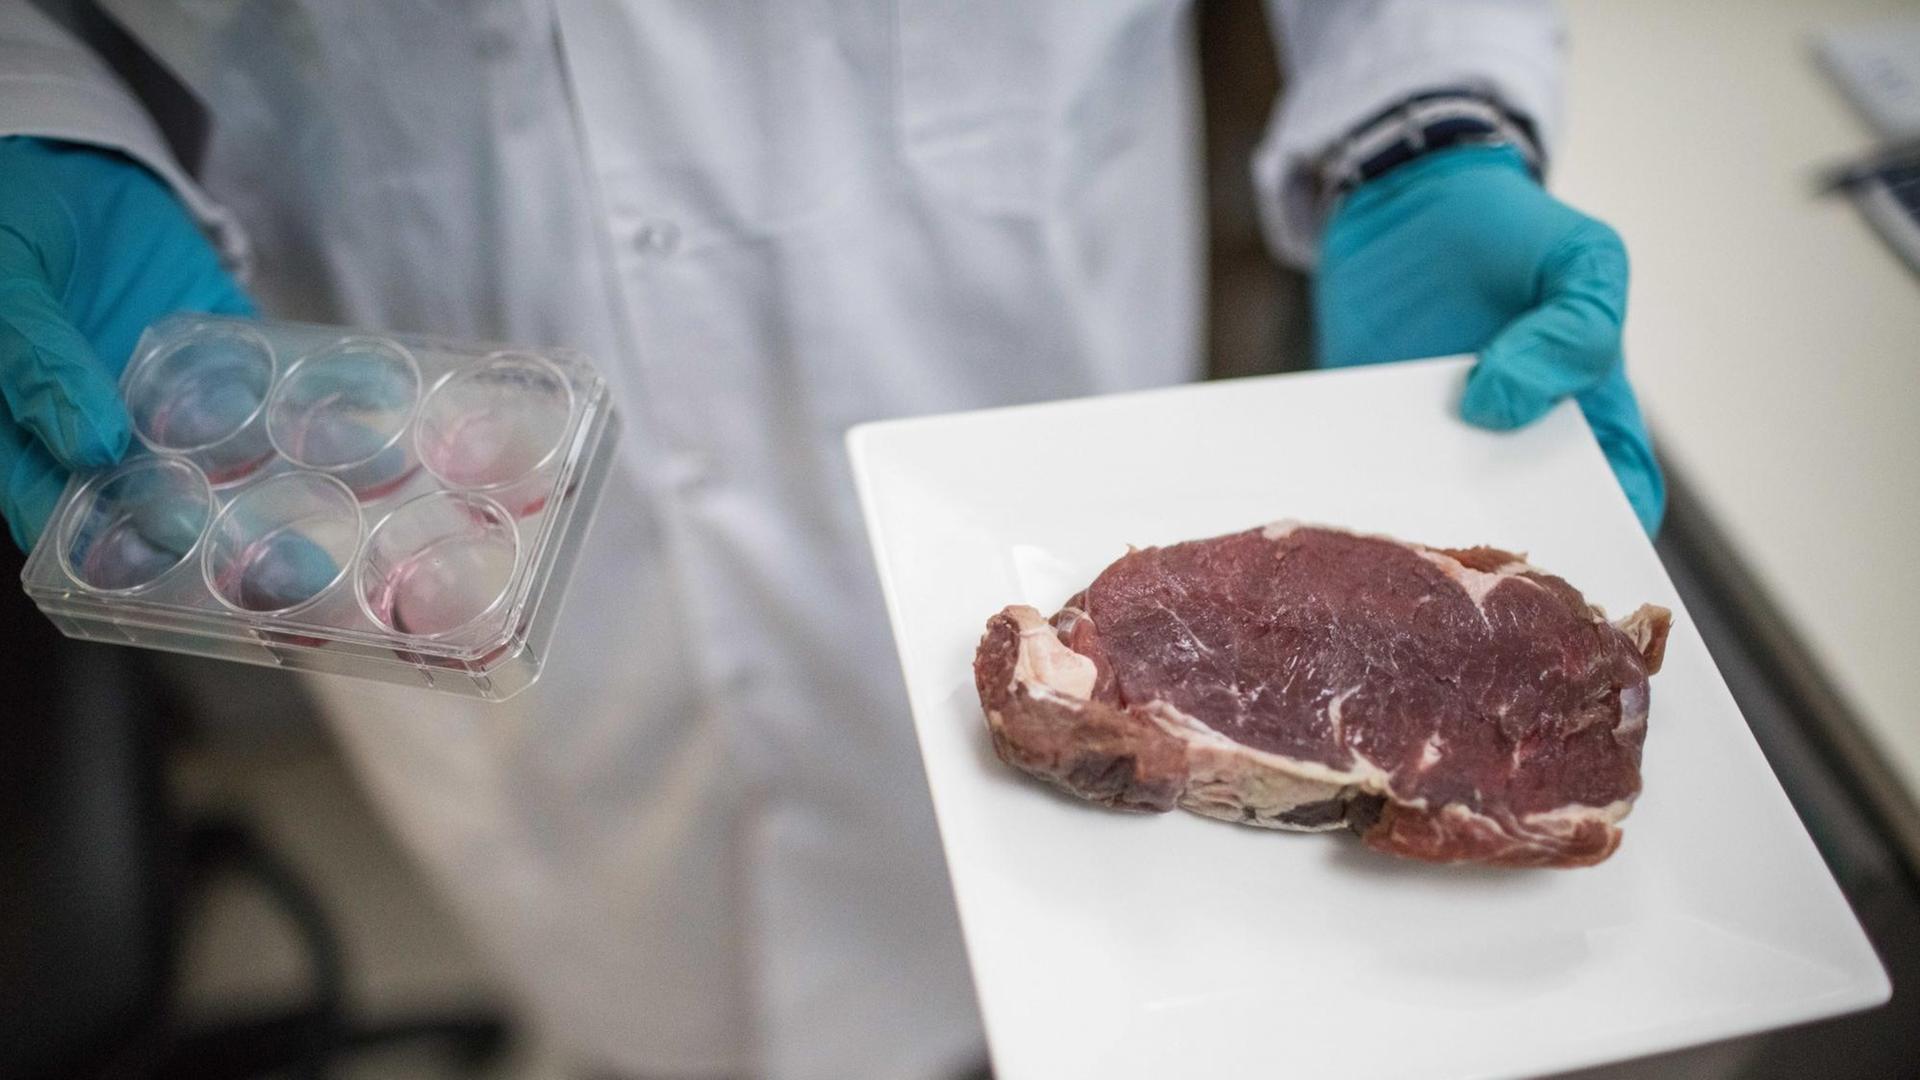 Der Startup-Gründer Didier Toubia hält eine Petrischale und ein Teller mit einem Steak in seinen Händen.